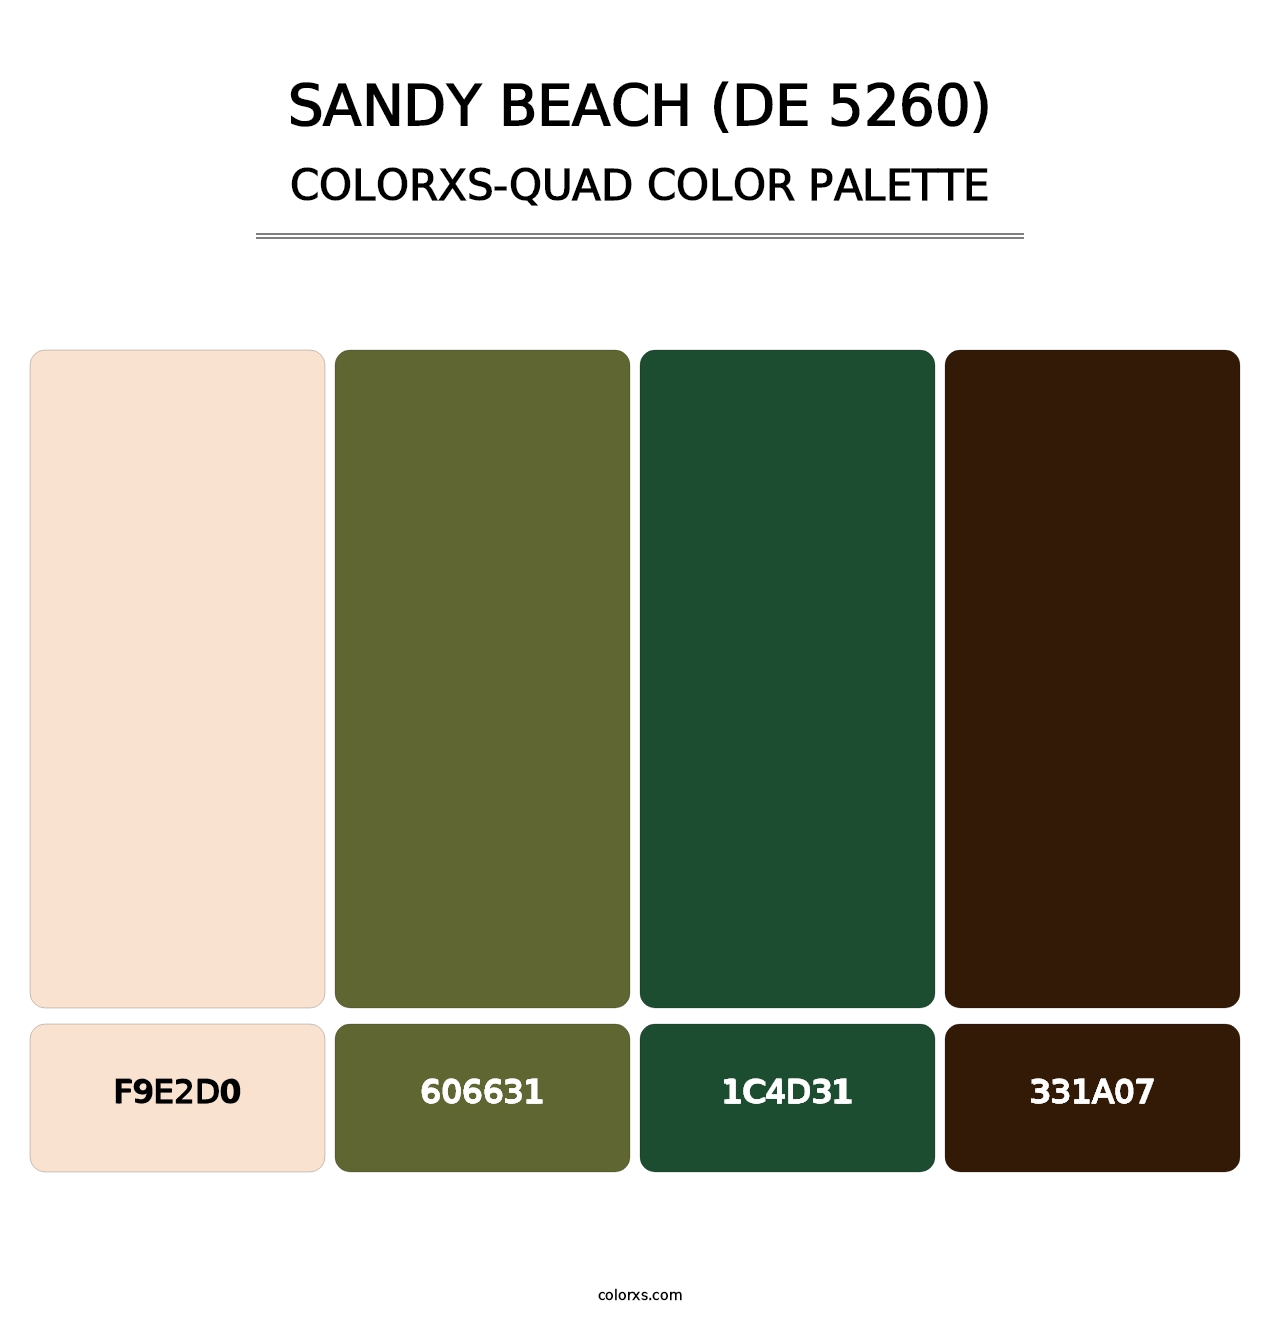 Sandy Beach (DE 5260) - Colorxs Quad Palette